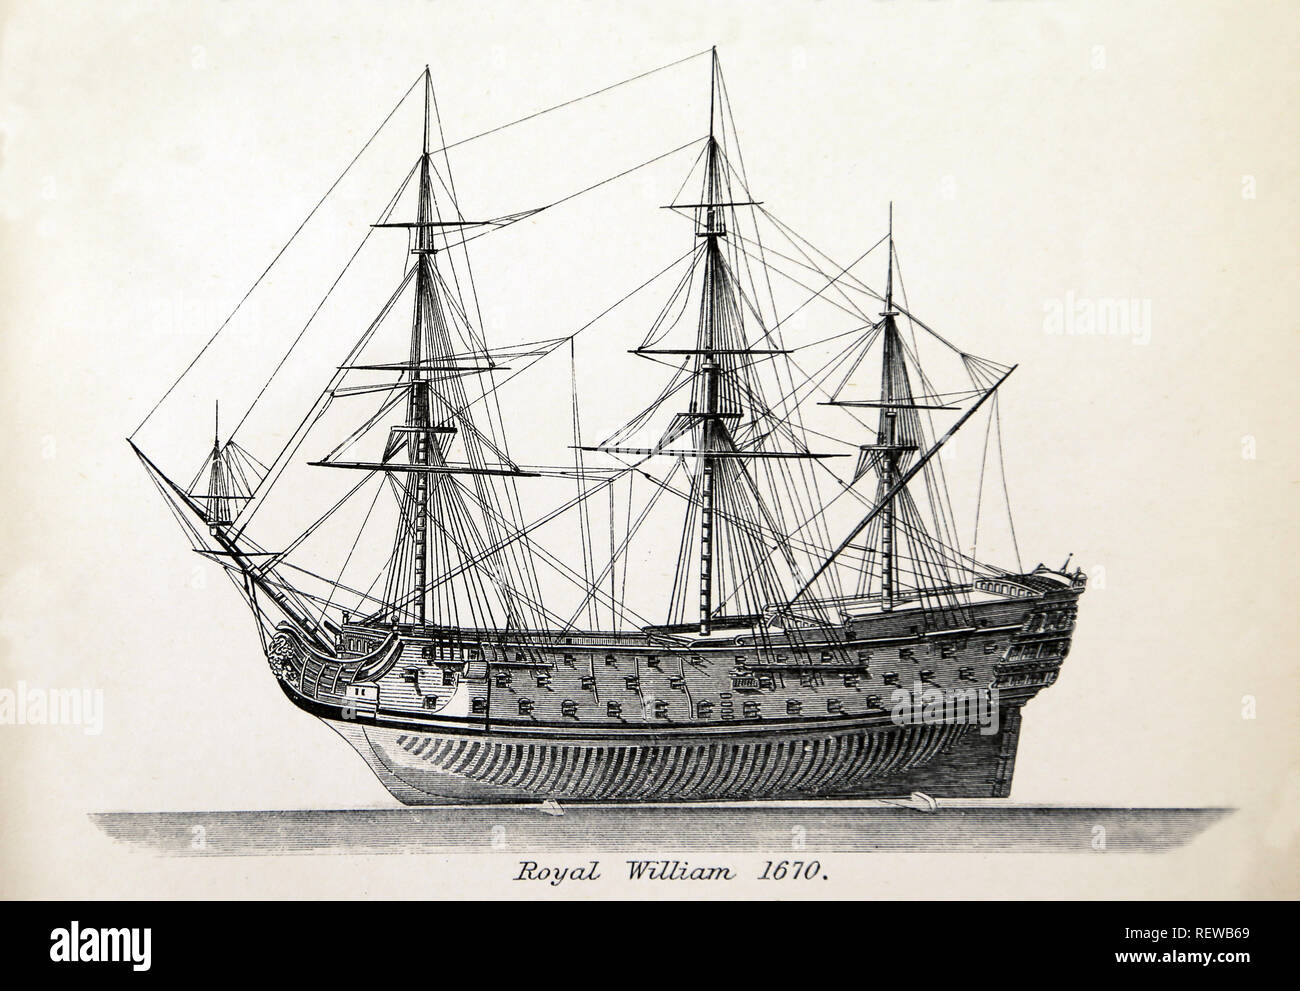 HMS Royal Williams Schiff. Als Royal Prince umbenannt. Von 1667 bis 1670 gebaut. Das Vereinigte Königreich naval warfare. Gravur Stockfoto